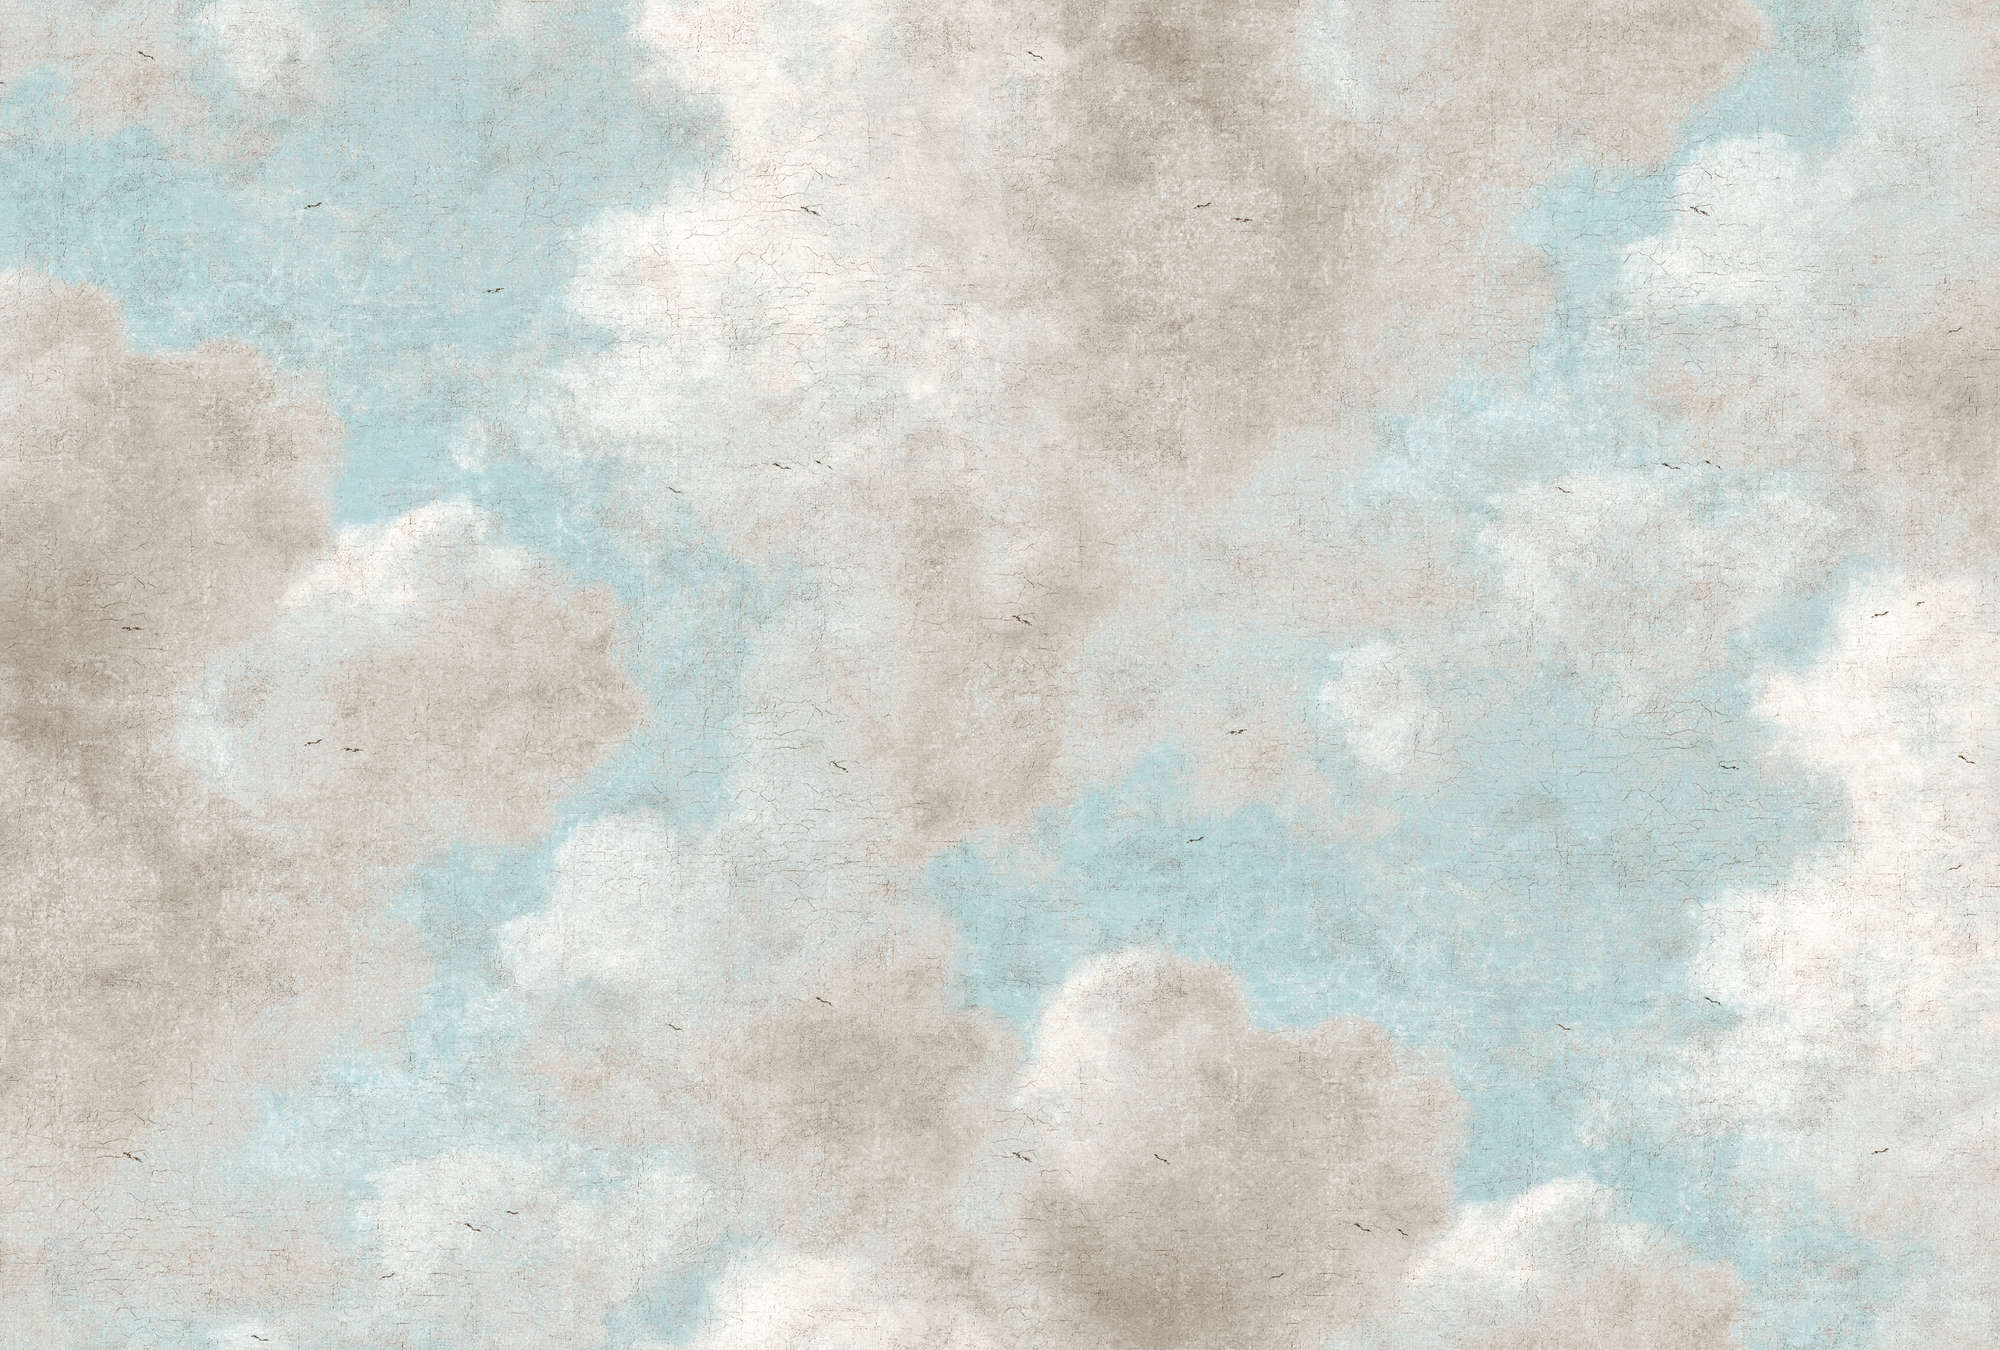             Carta da parati in stile pittura ad olio con nuvole e cielo blu - Grigio, Blu
        